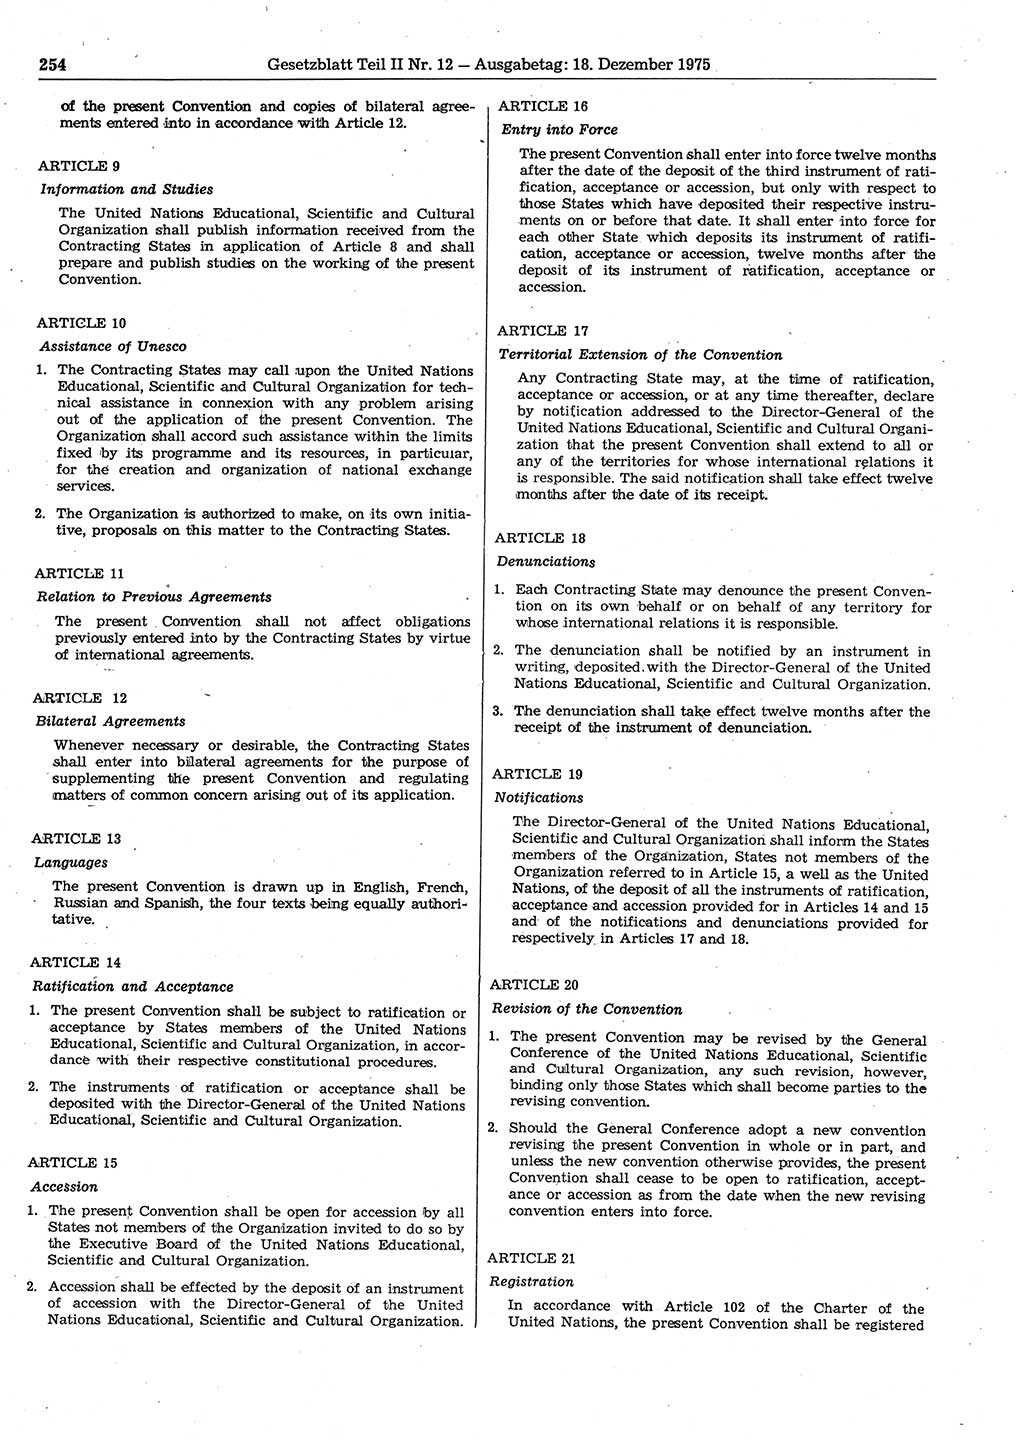 Gesetzblatt (GBl.) der Deutschen Demokratischen Republik (DDR) Teil ⅠⅠ 1975, Seite 254 (GBl. DDR ⅠⅠ 1975, S. 254)